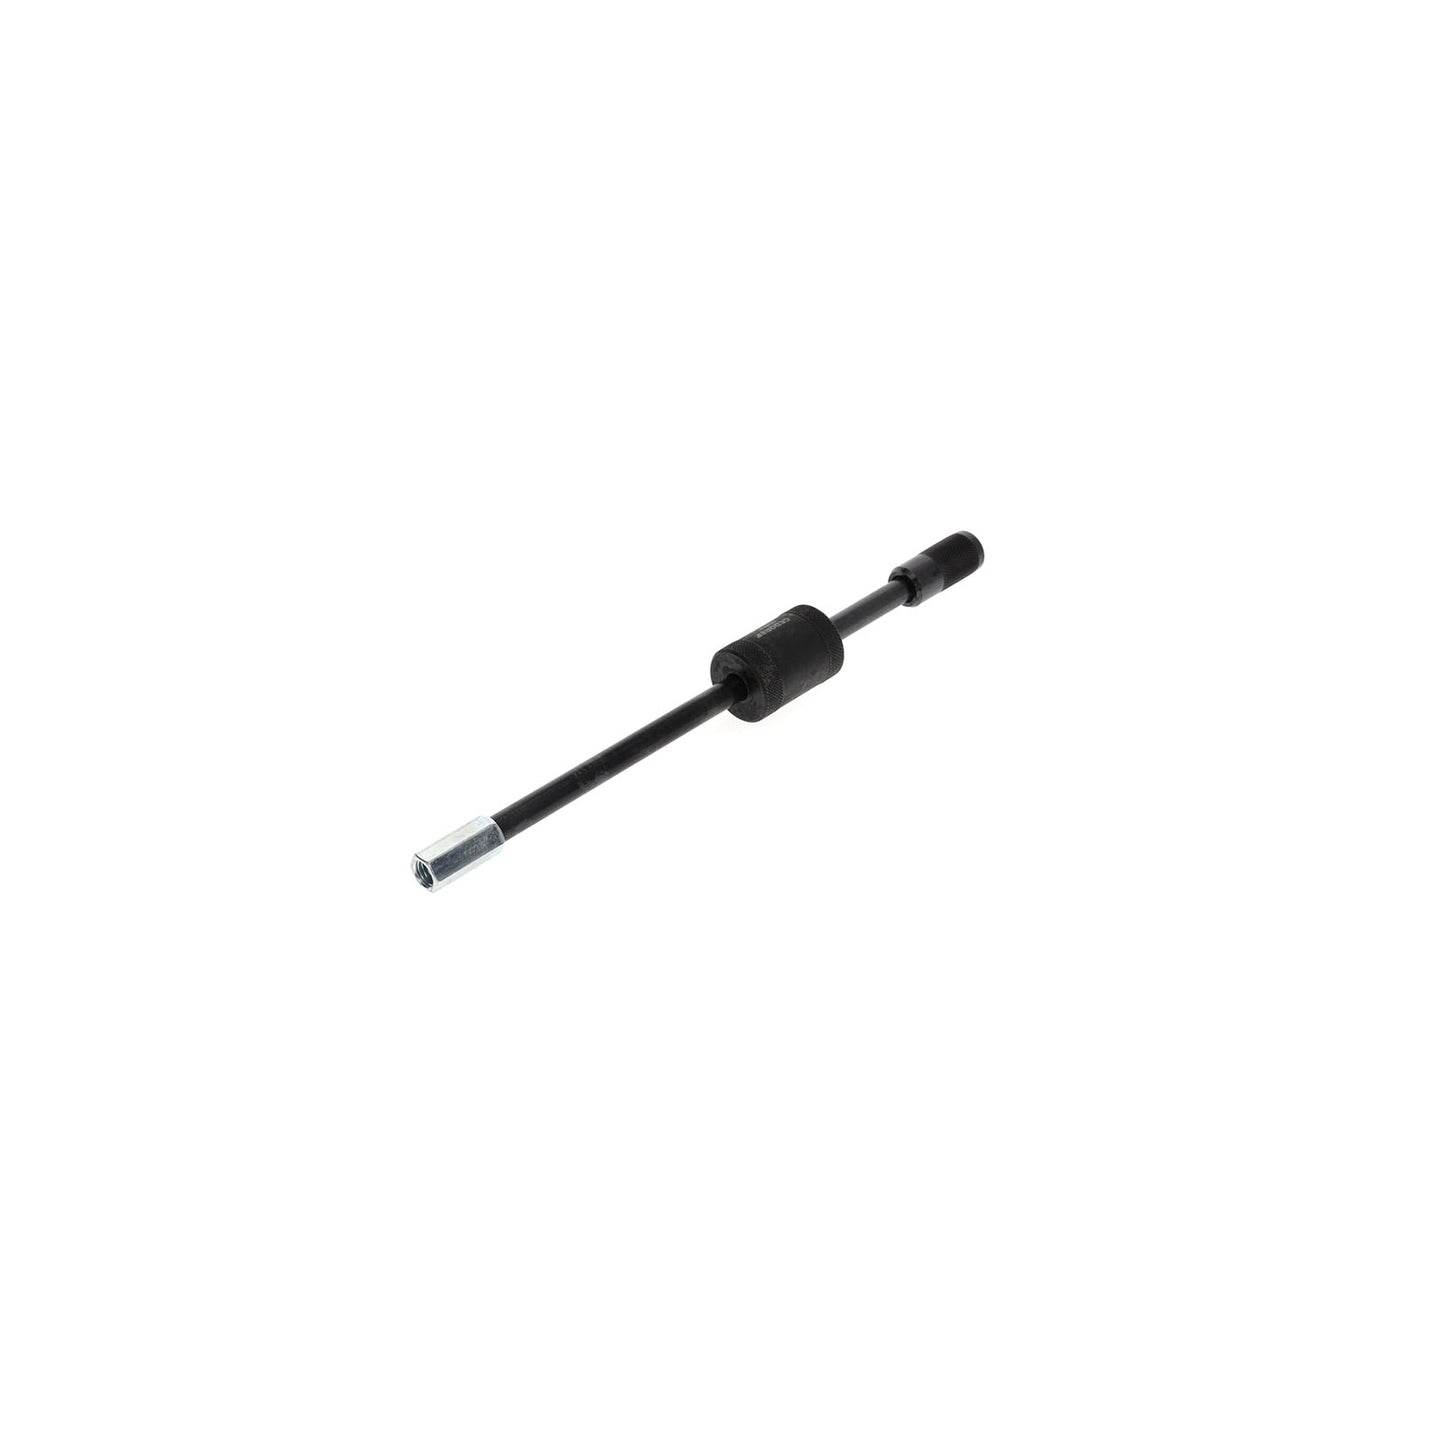 GEDORE 1.35/1 - Inertia hammer 23cm 200 g (8016070)